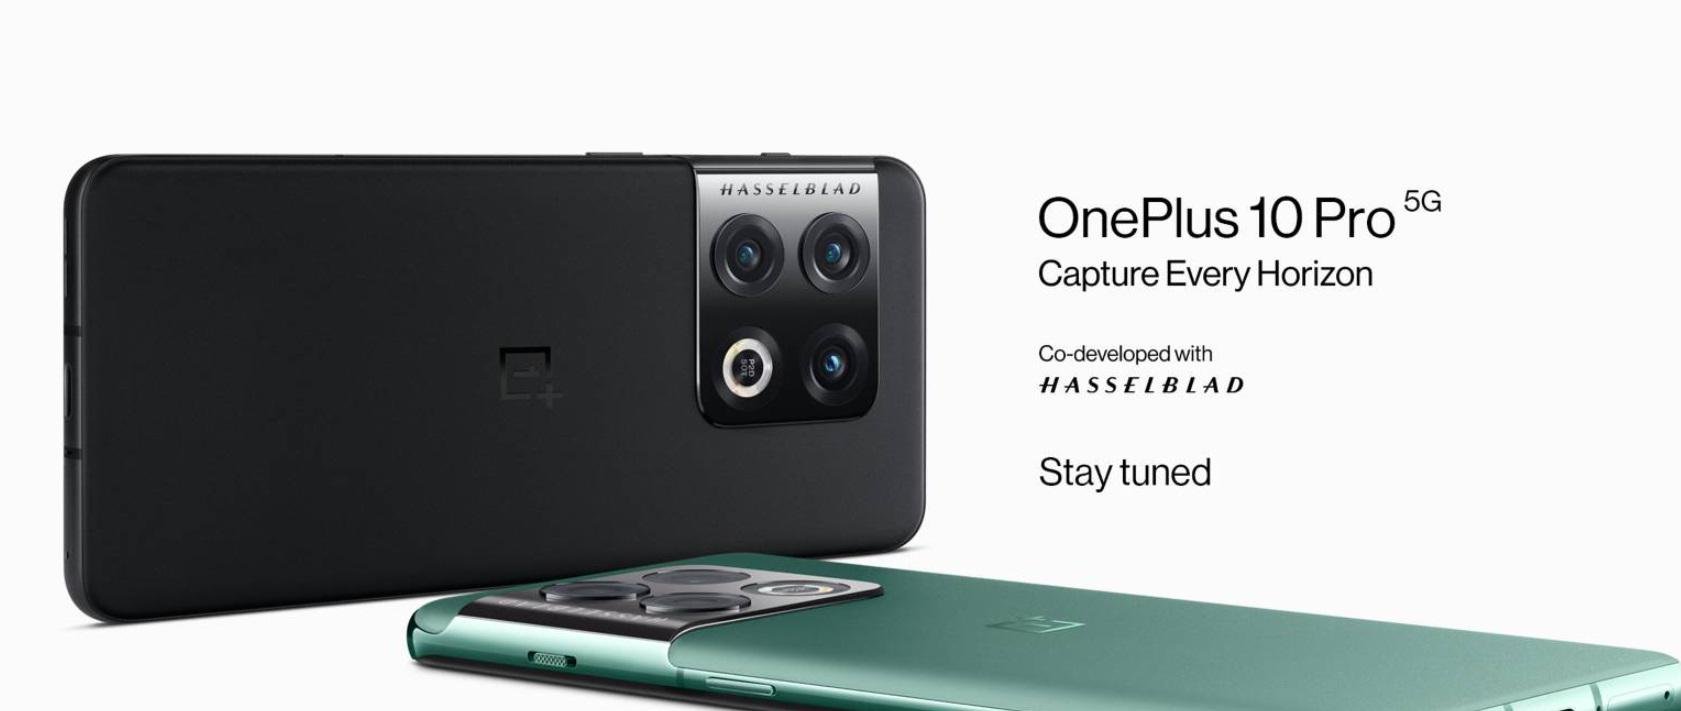 Detalhes da câmera do OnePlus 10 Pro.